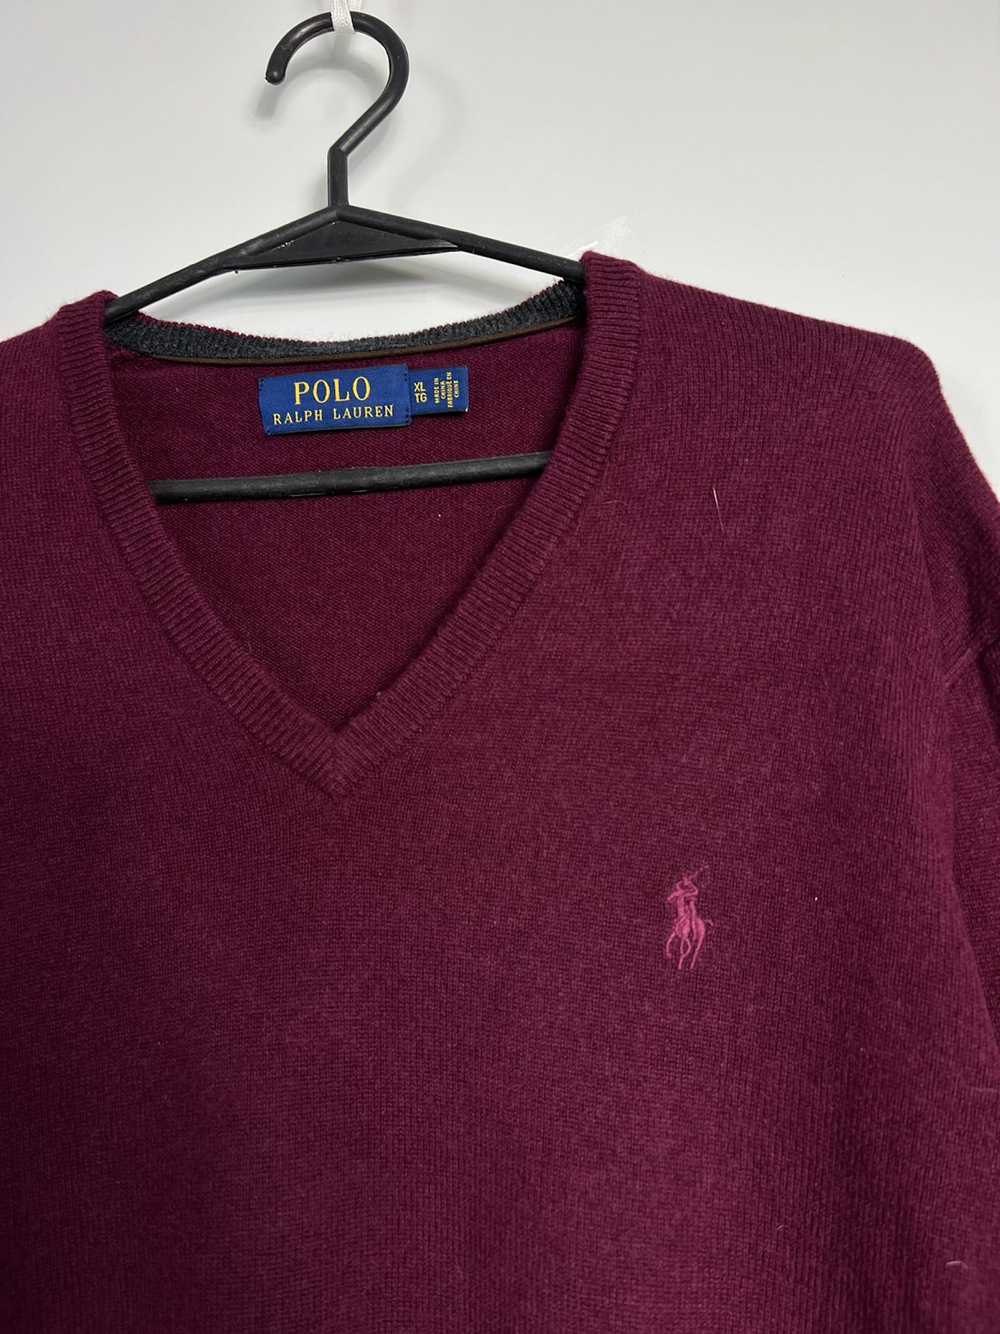 Polo Ralph Lauren × Ralph Lauren Wool Sweater Ral… - image 2